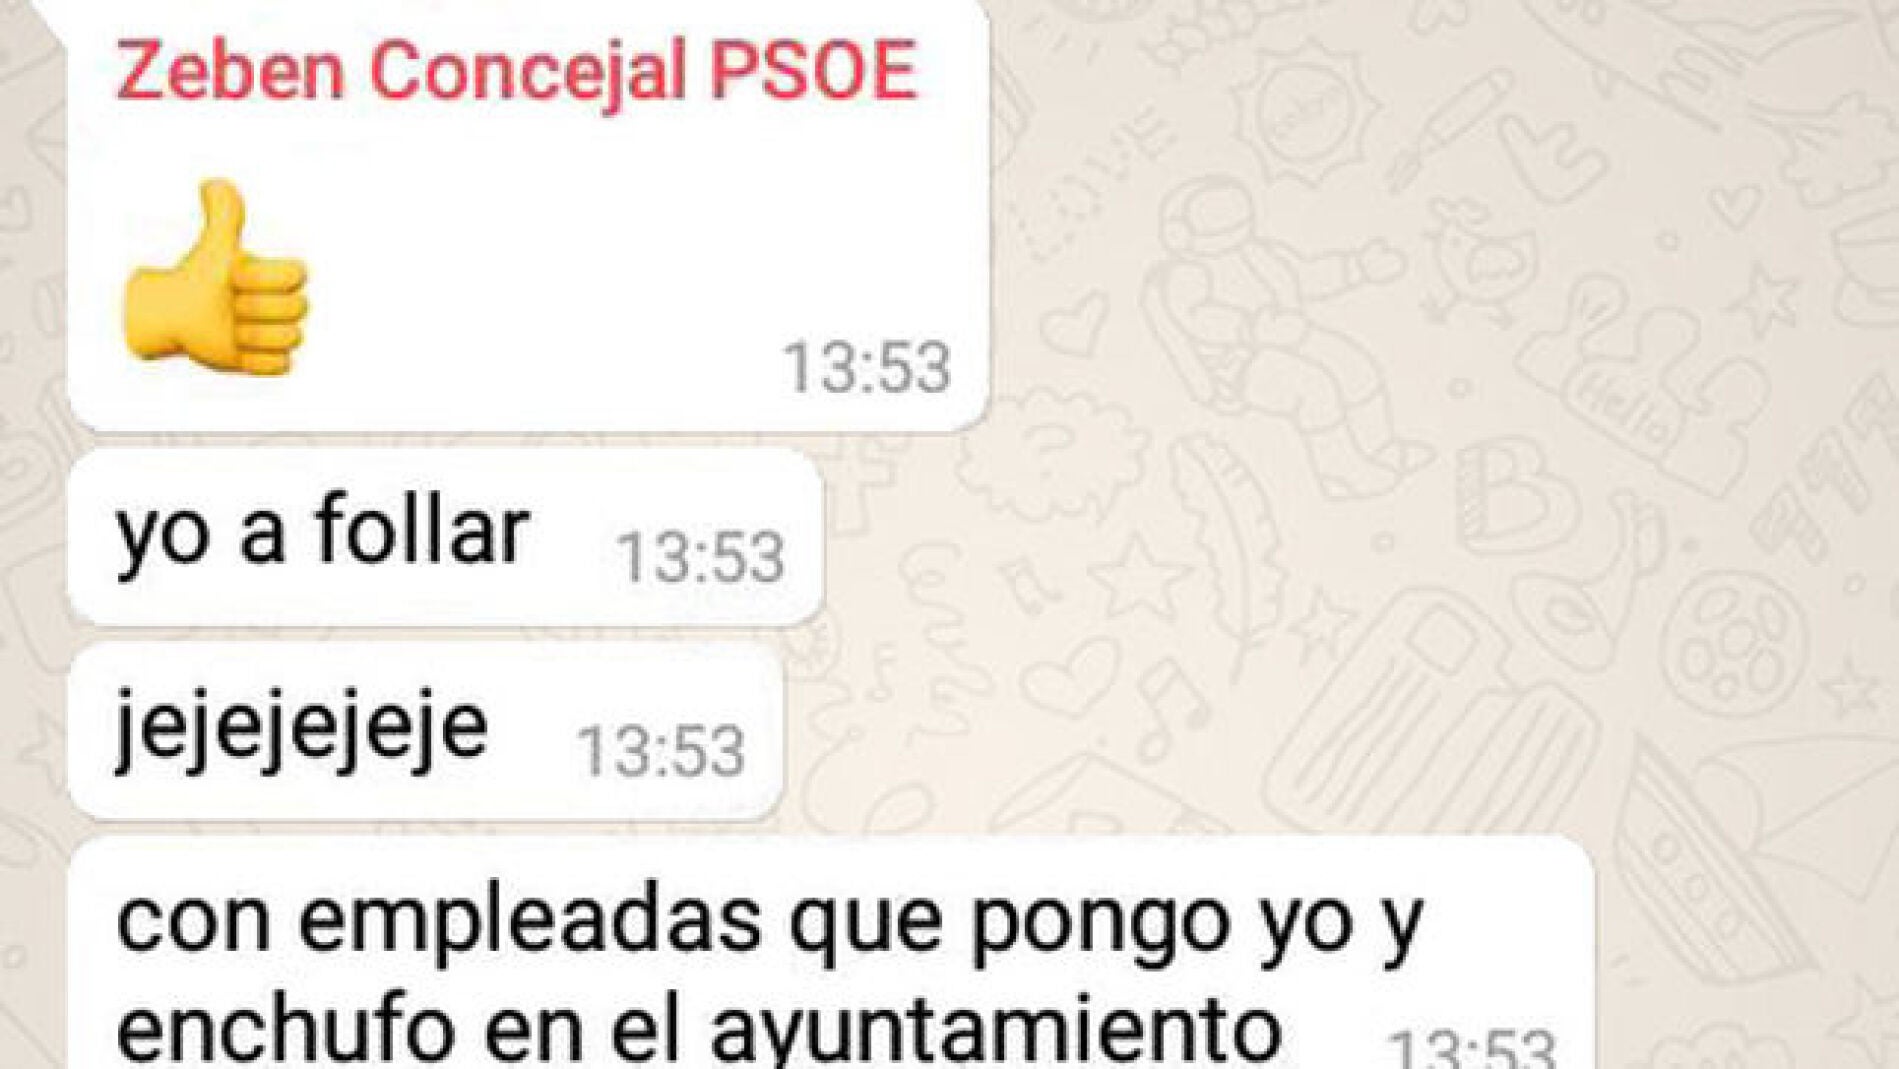 Un concejal se jacta en un chat del PSOE de enchufar a empleadas para tener sexo